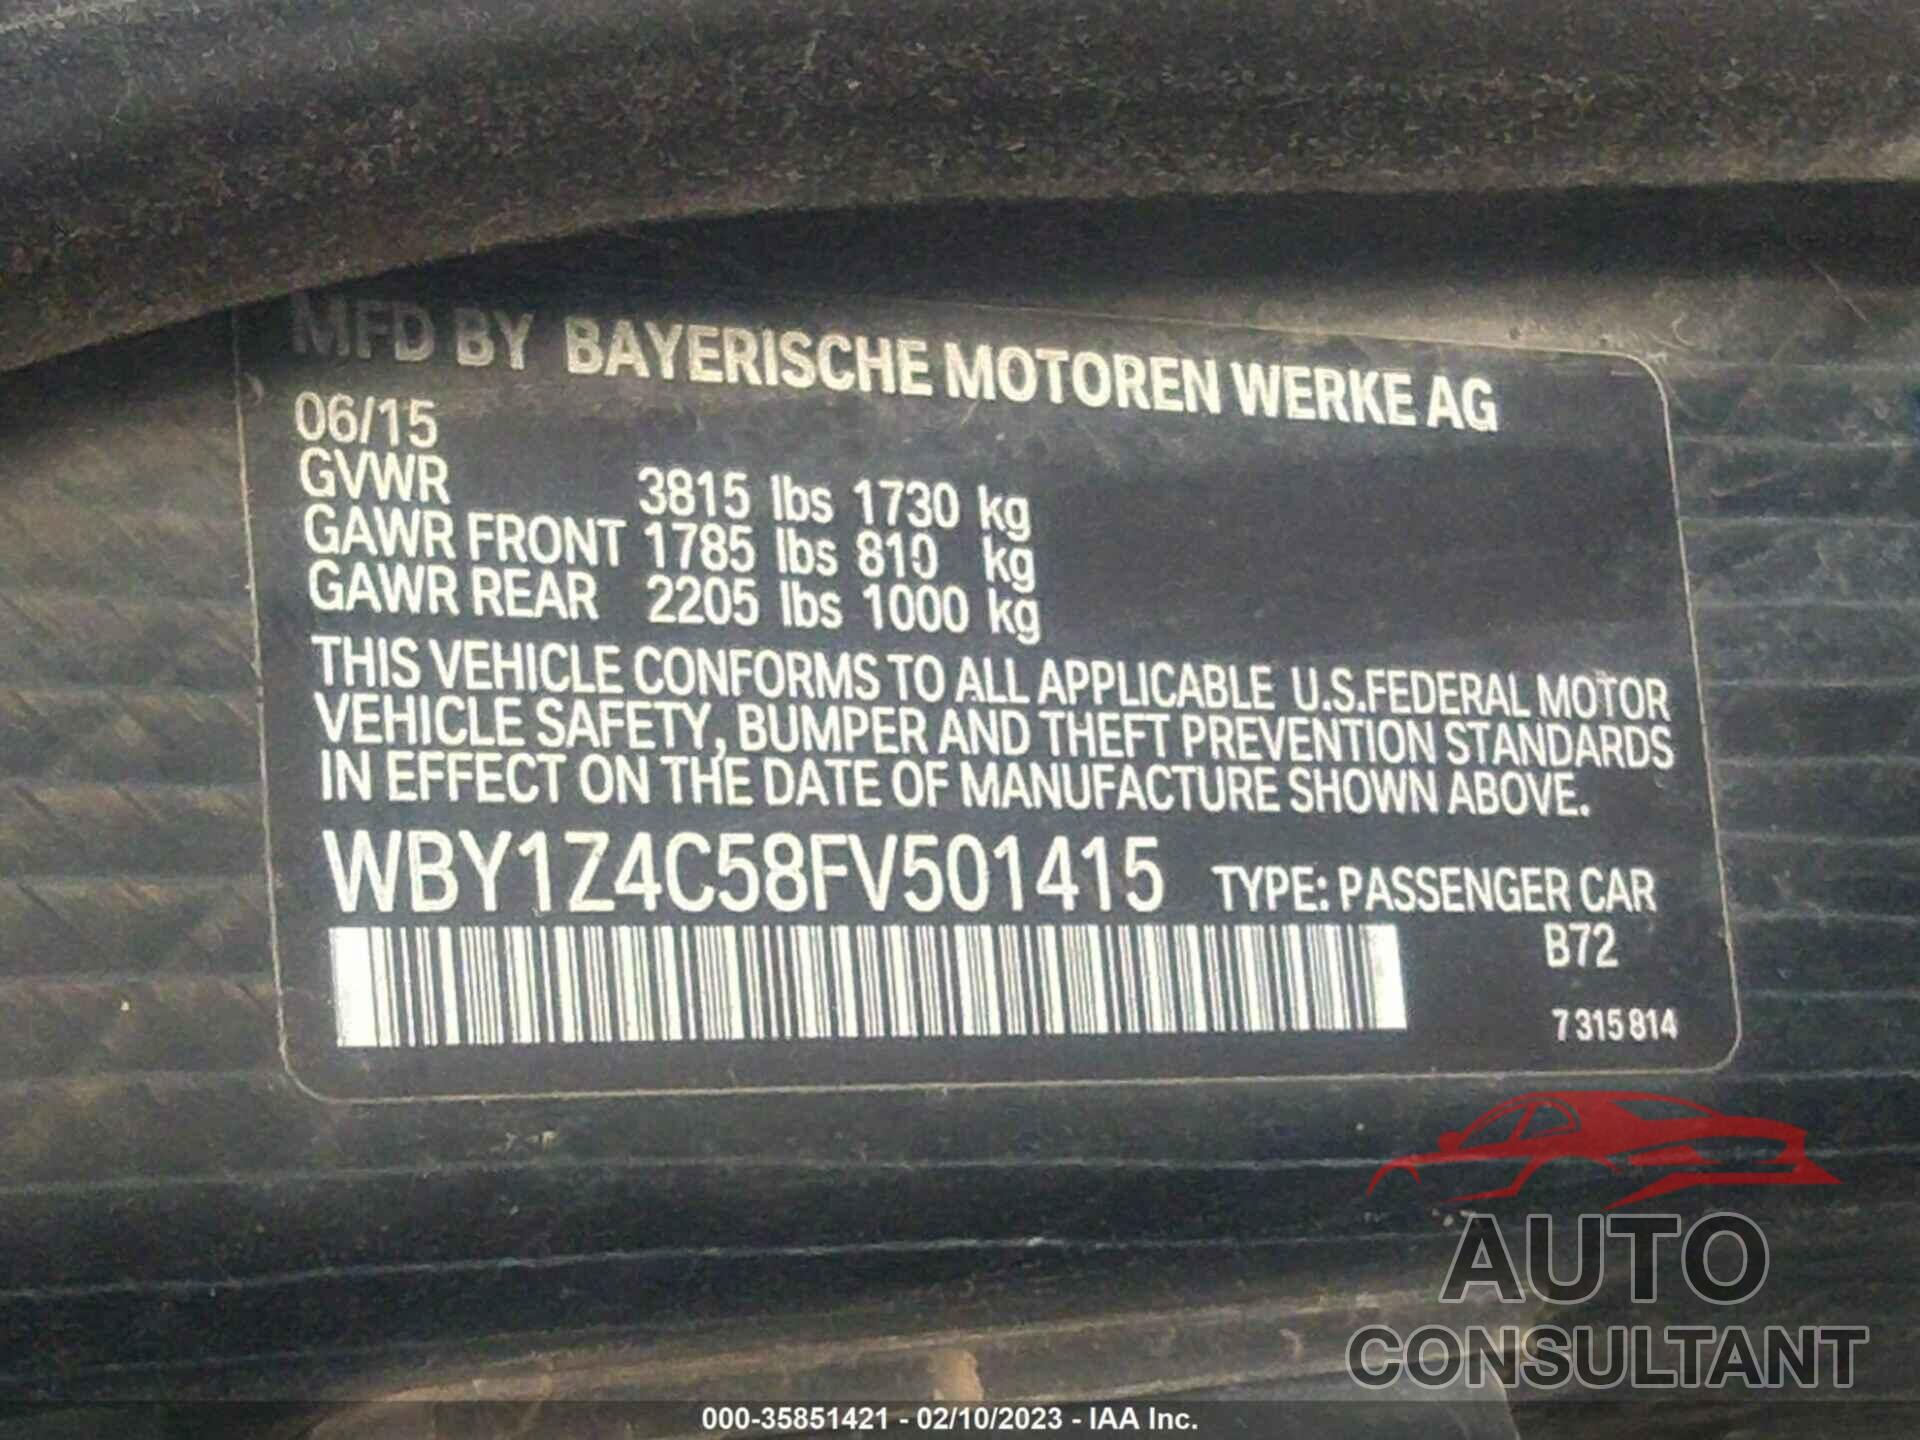 BMW I3 2015 - WBY1Z4C58FV501415